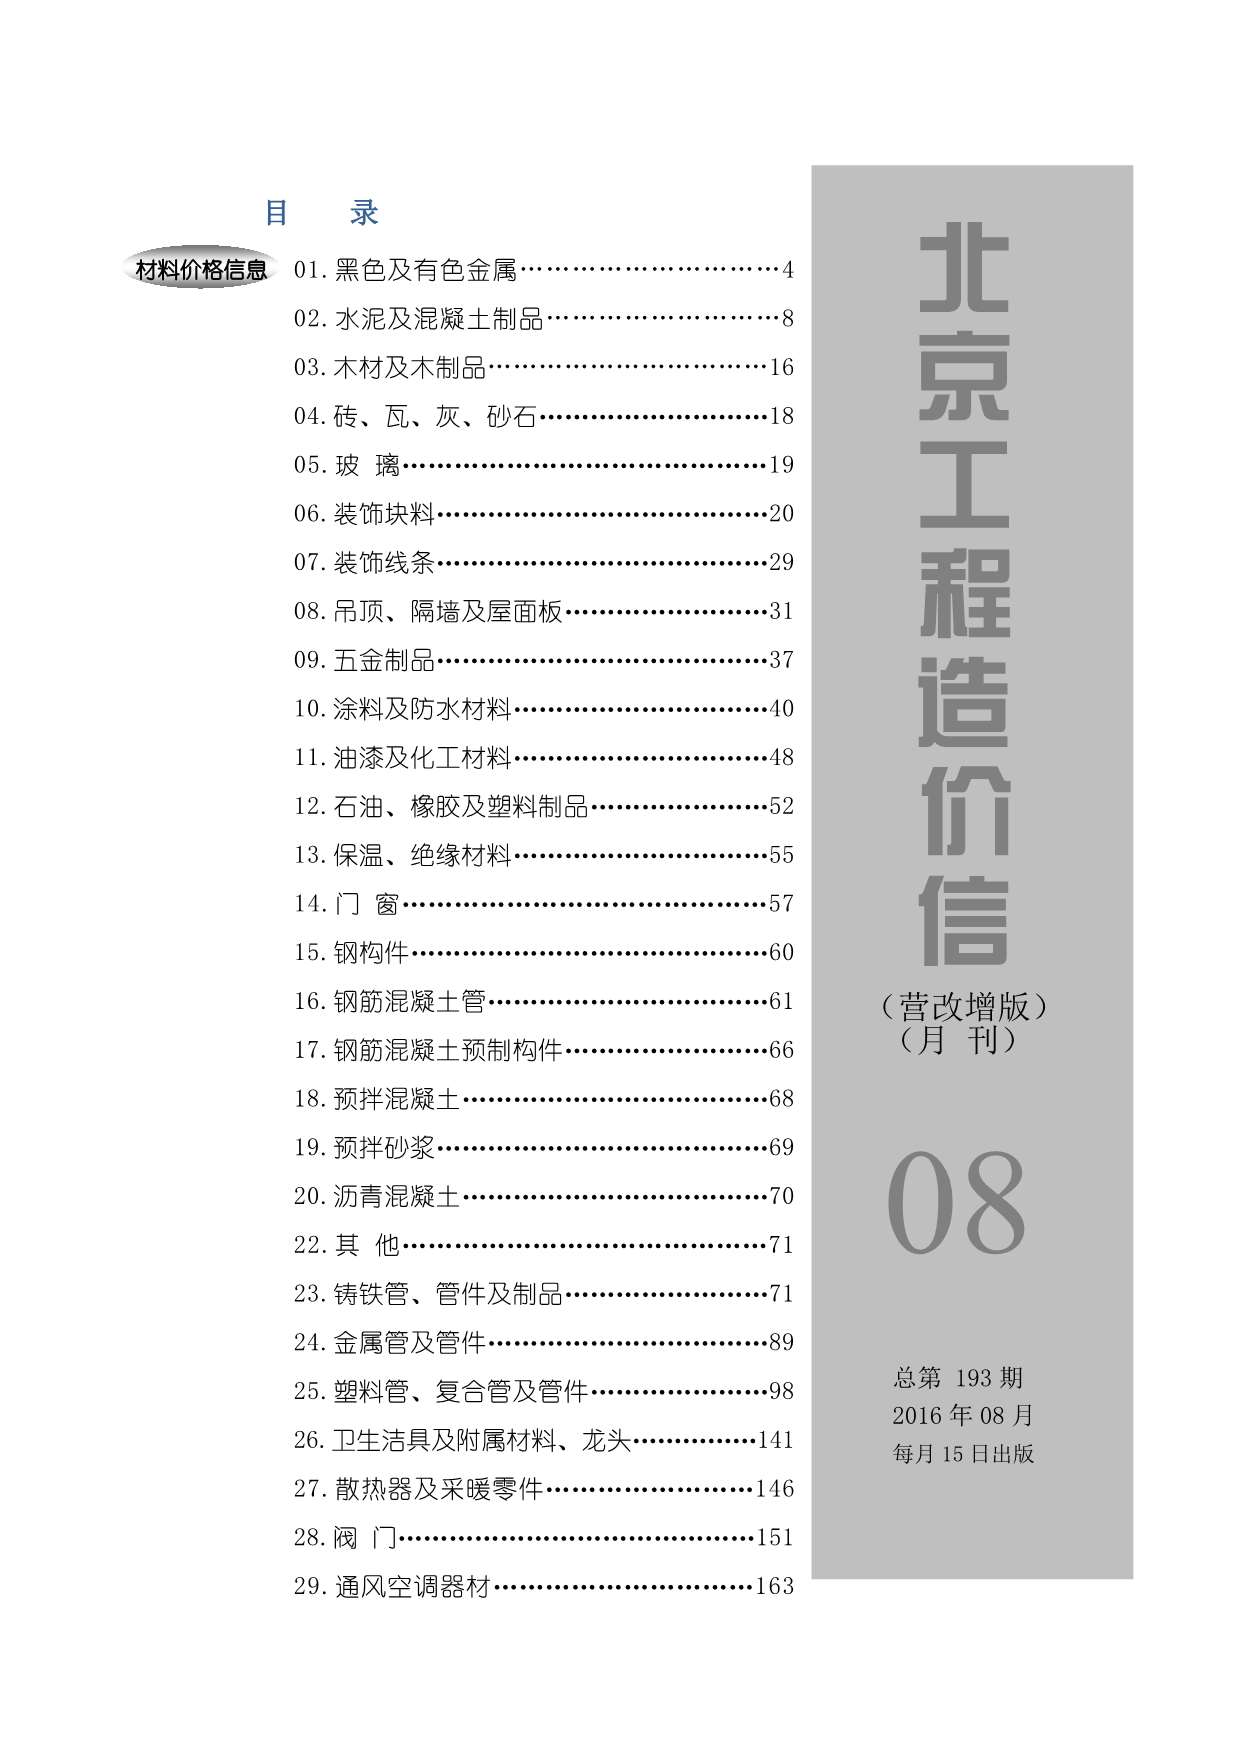 北京市2016年8月工程信息价_北京市信息价期刊PDF扫描件电子版